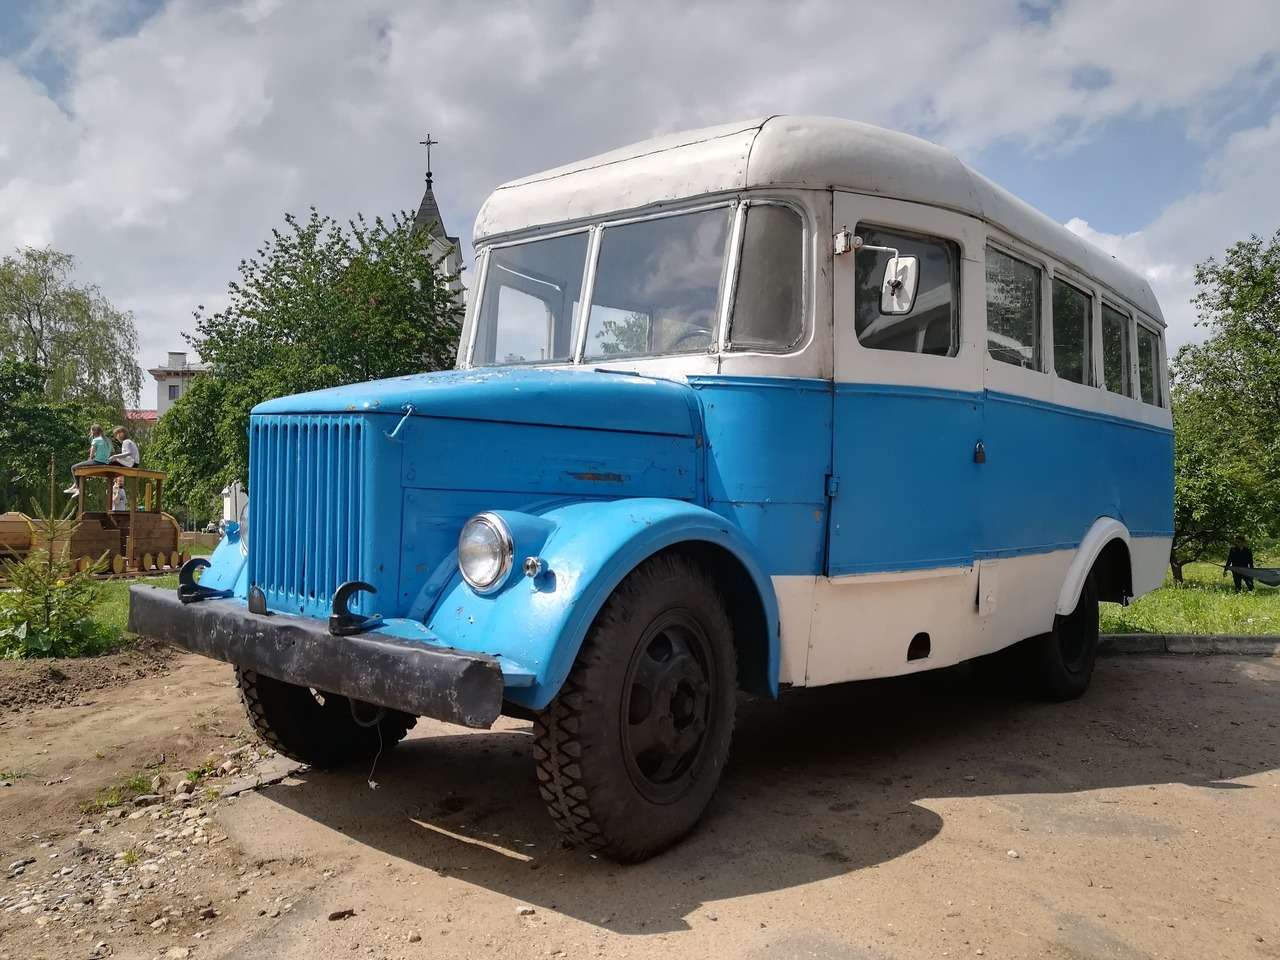 Автобусы типа ГЗА-651 были, пожалуй, самыми массовыми в СССР. Их выпускали десятки заводов в течение более 30 лет. Это были и ПАЗ, и КАвЗ, и авторемонтные заводы. В Беларуси тоже собирали, а затем и капитально ремонтировали автобусы этого типа, в городе Борисове, что под Минском.